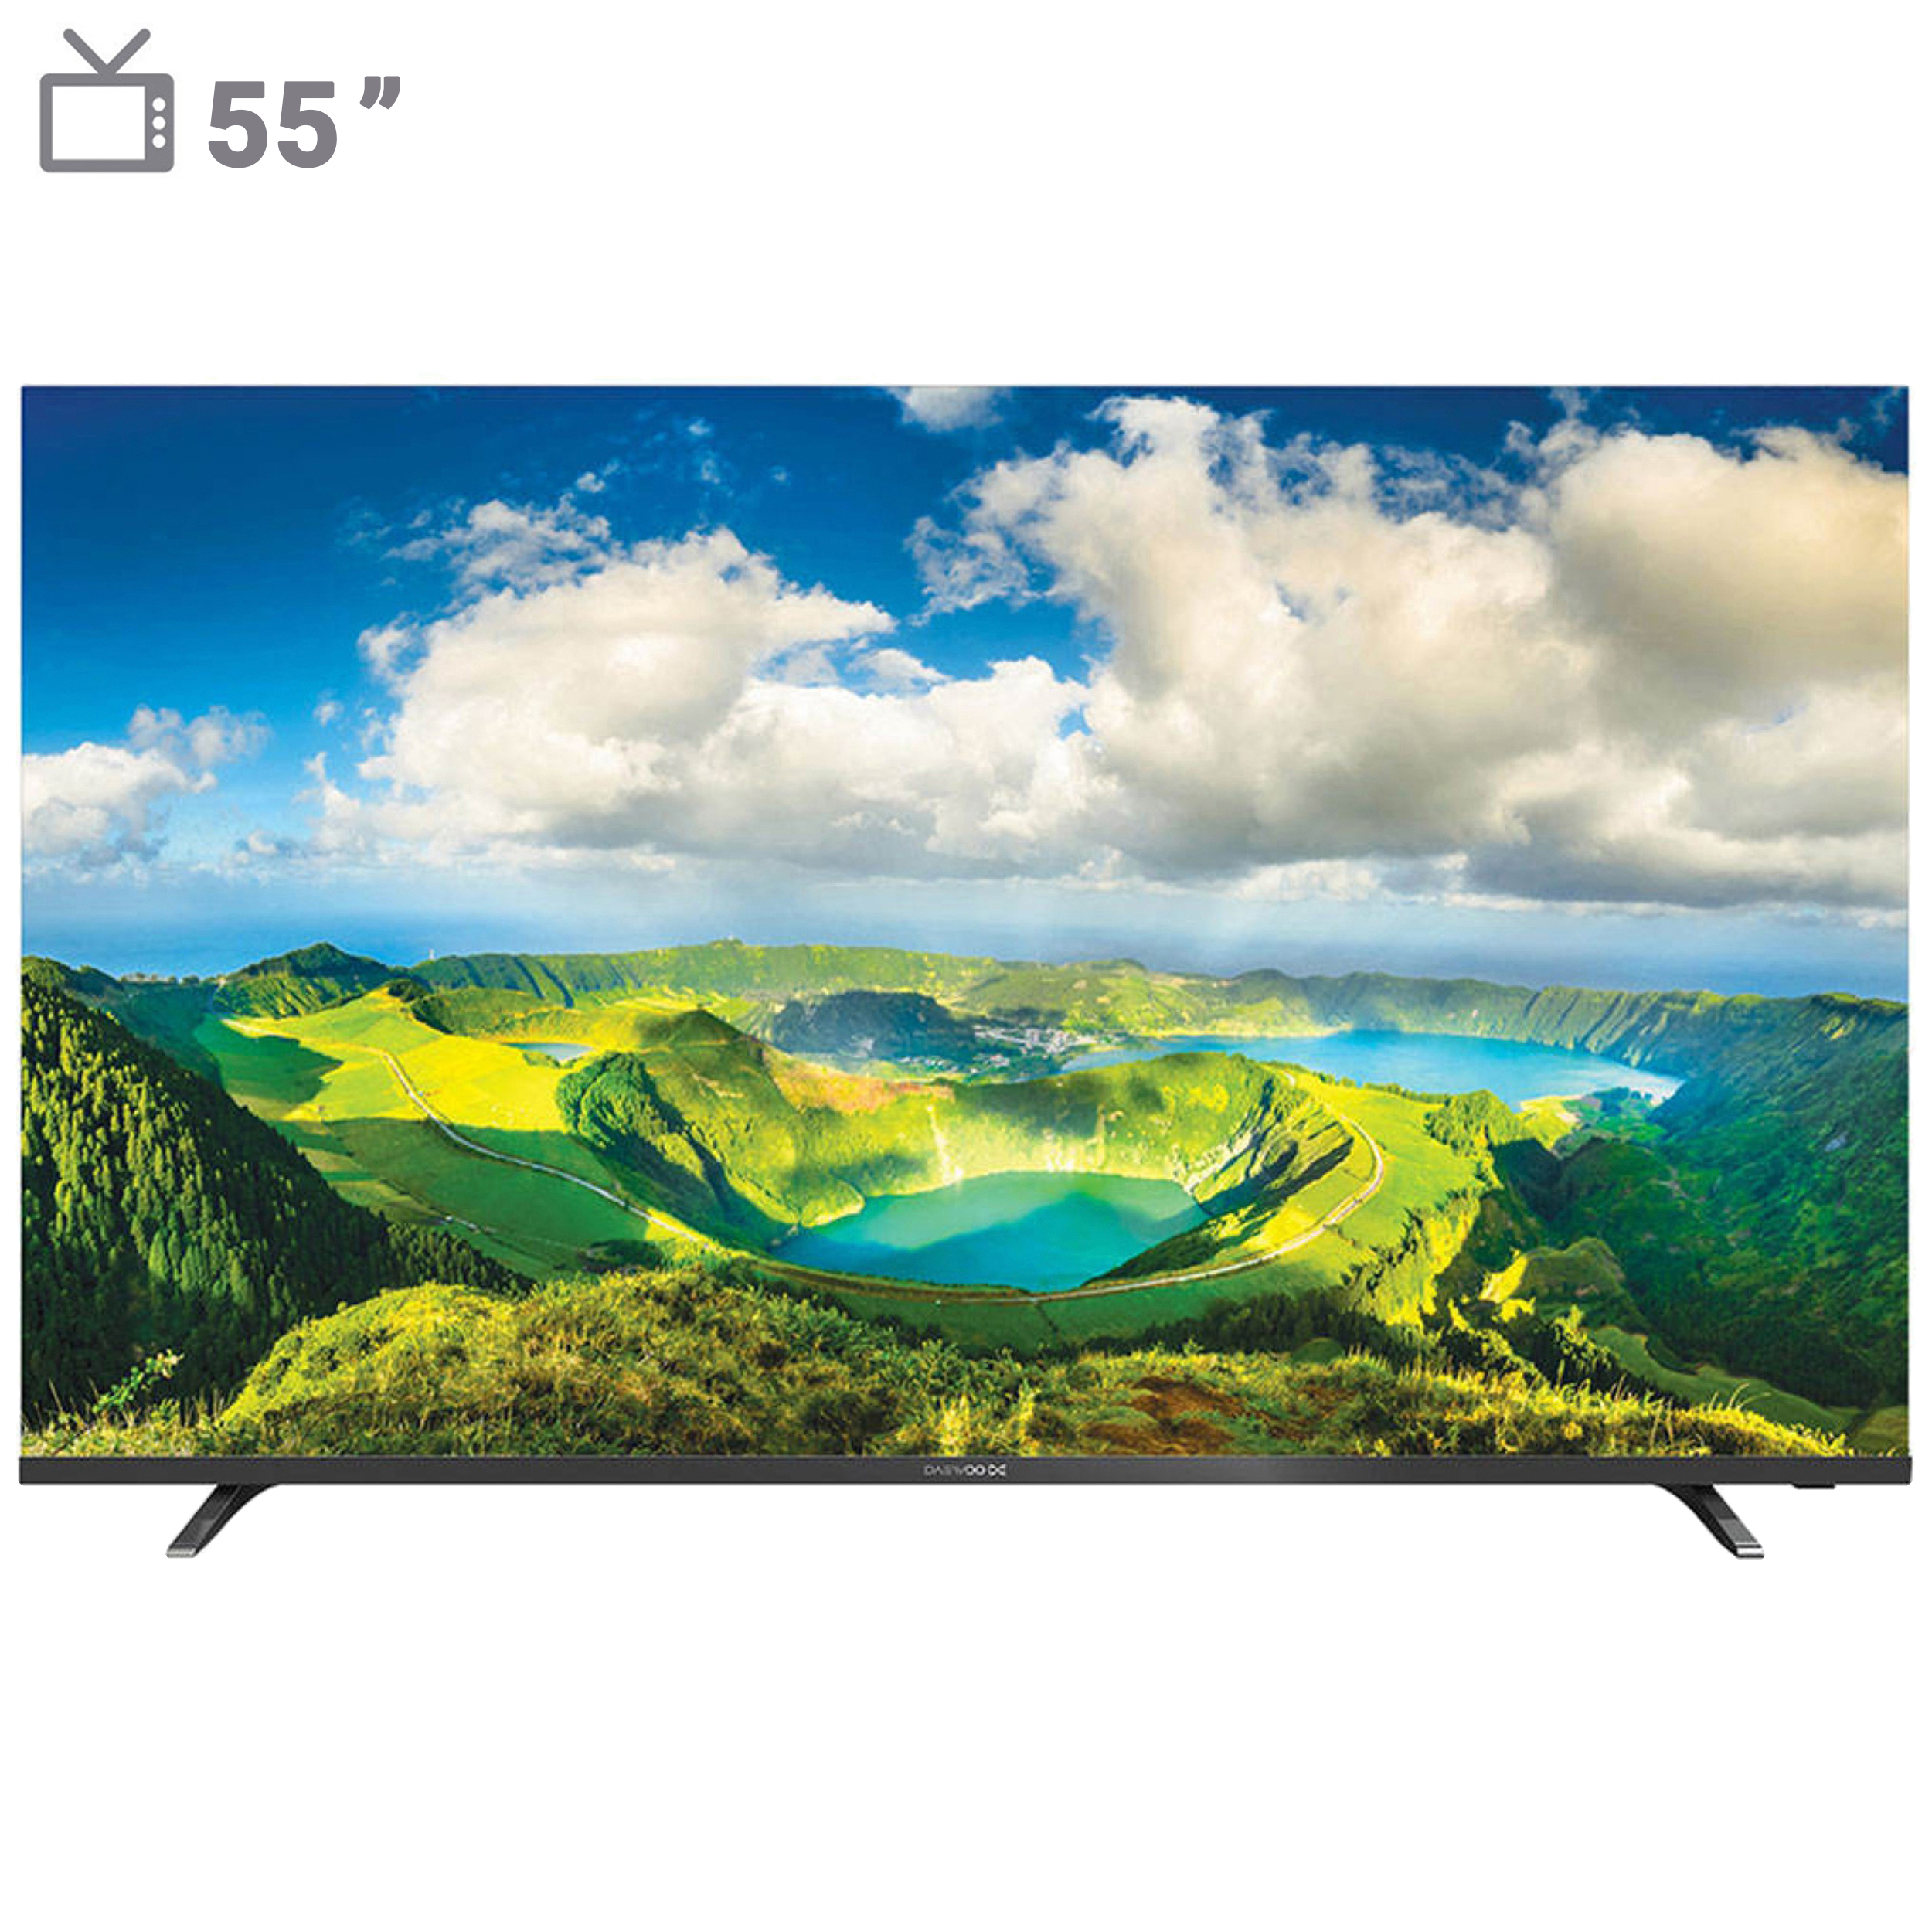 نکته خرید - قیمت روز تلویزیون ال ای دی هوشمند دوو مدل DSL-55S7000EU سایز 55 اینچ خرید